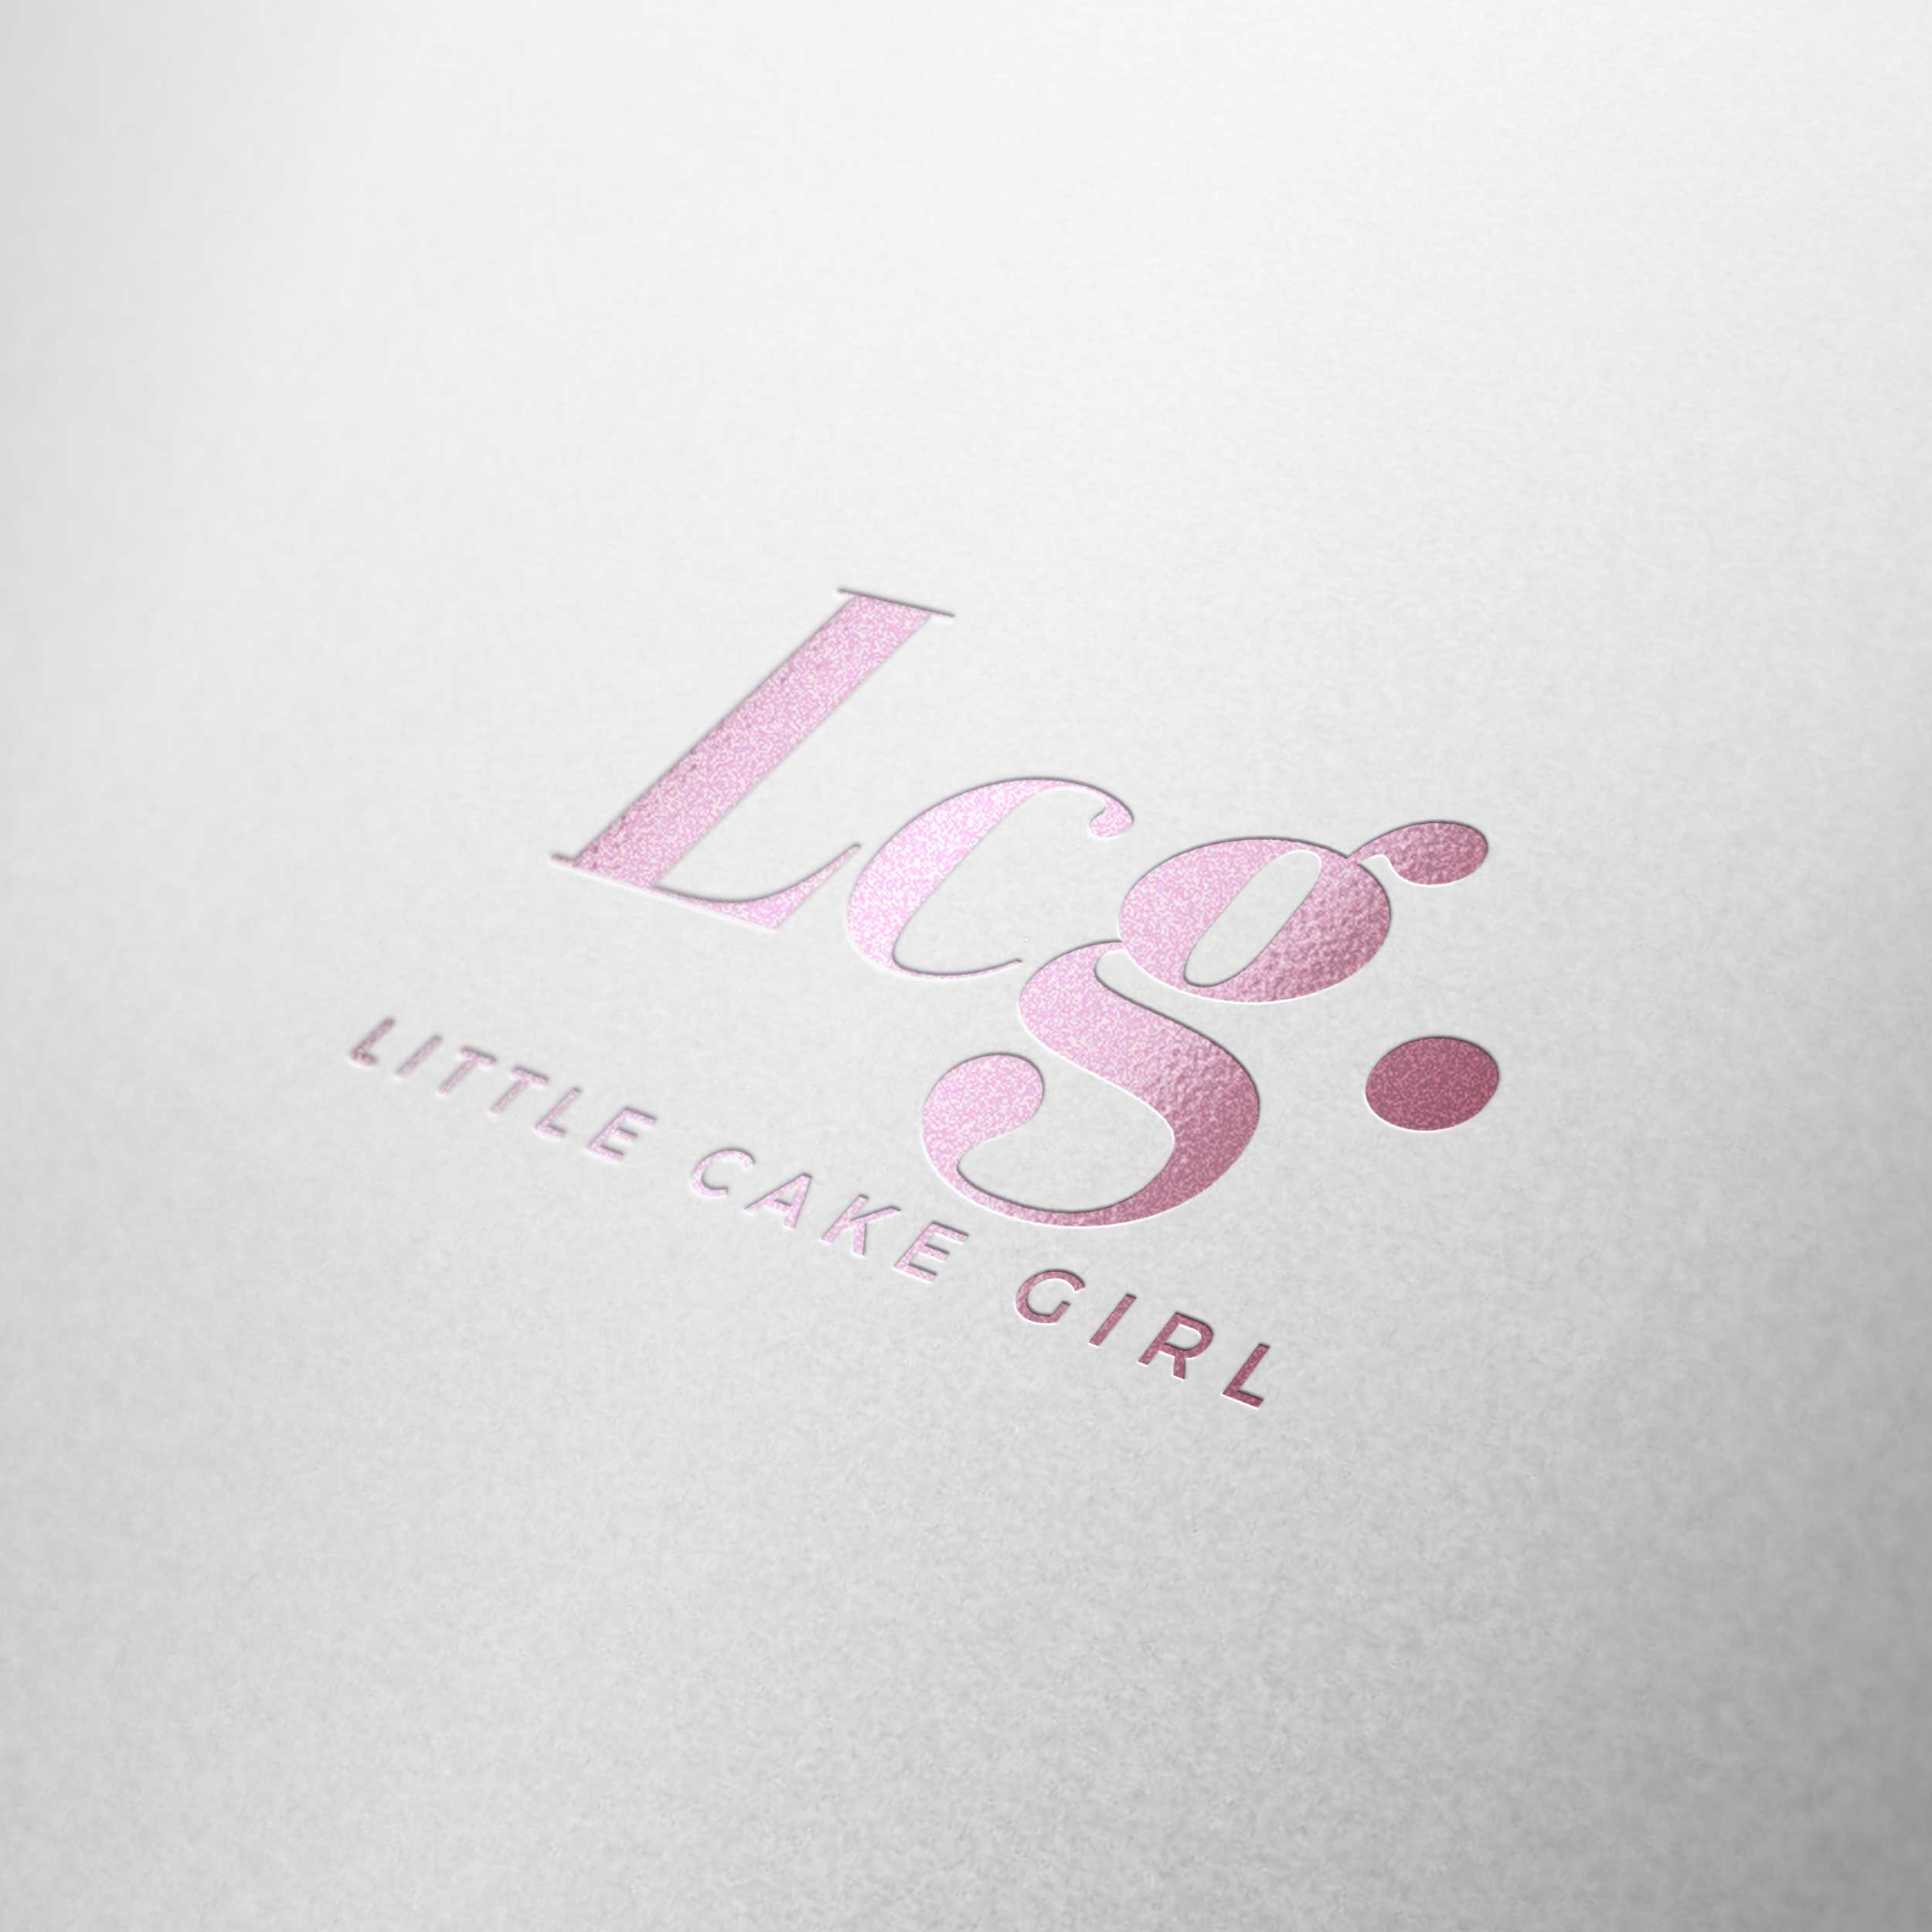 LITTLE-CAKE-GIRL-min